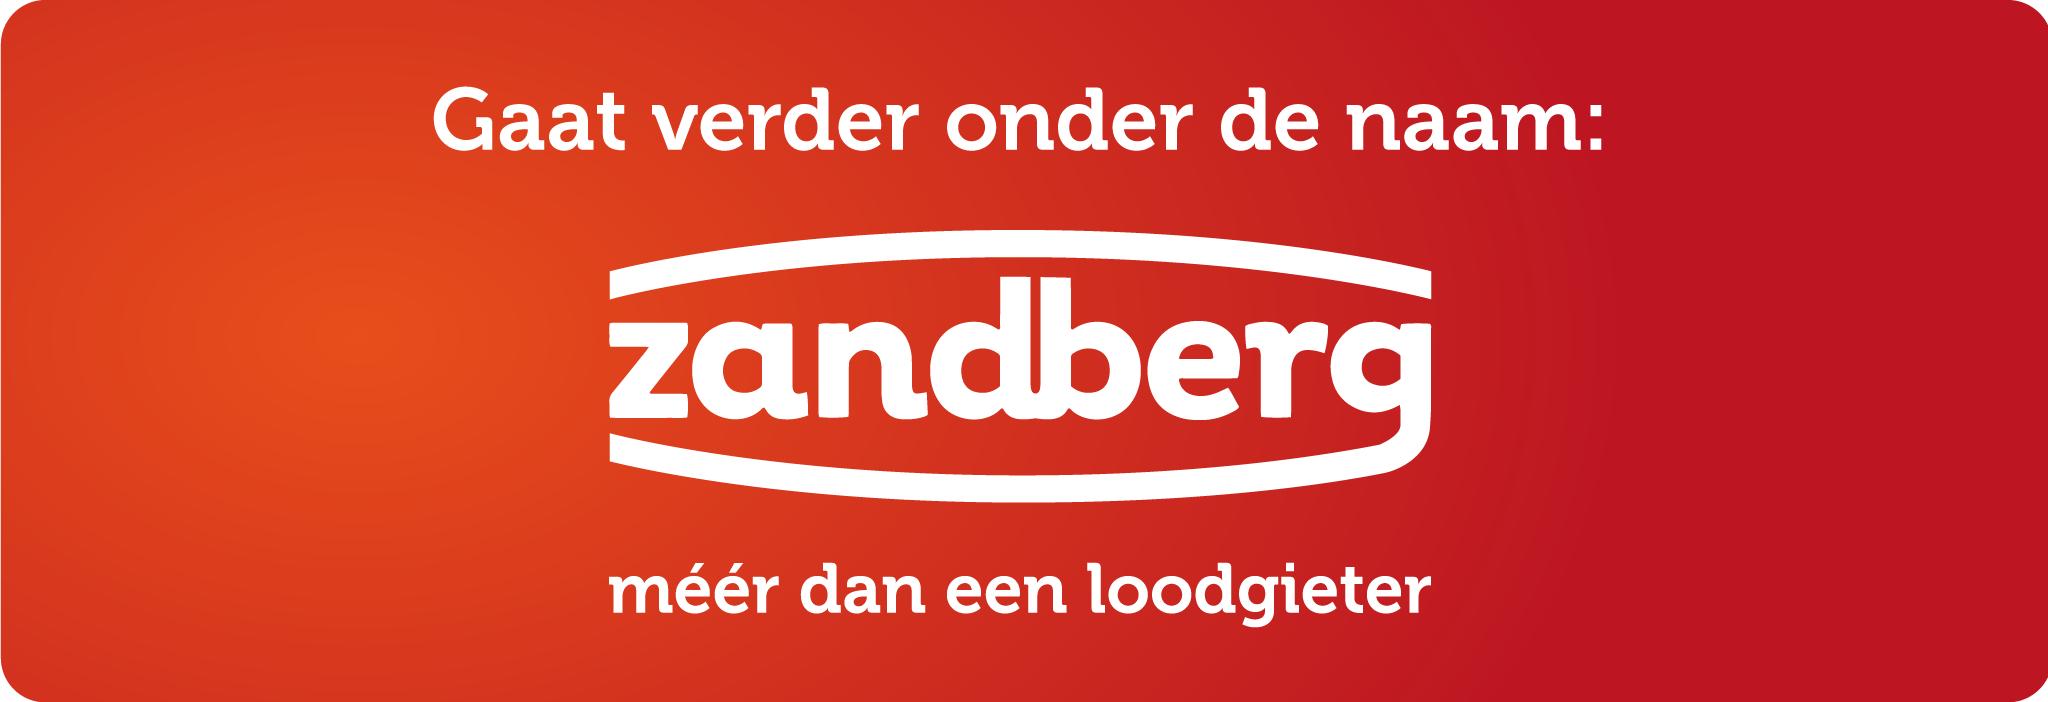 Zandberg-Banner